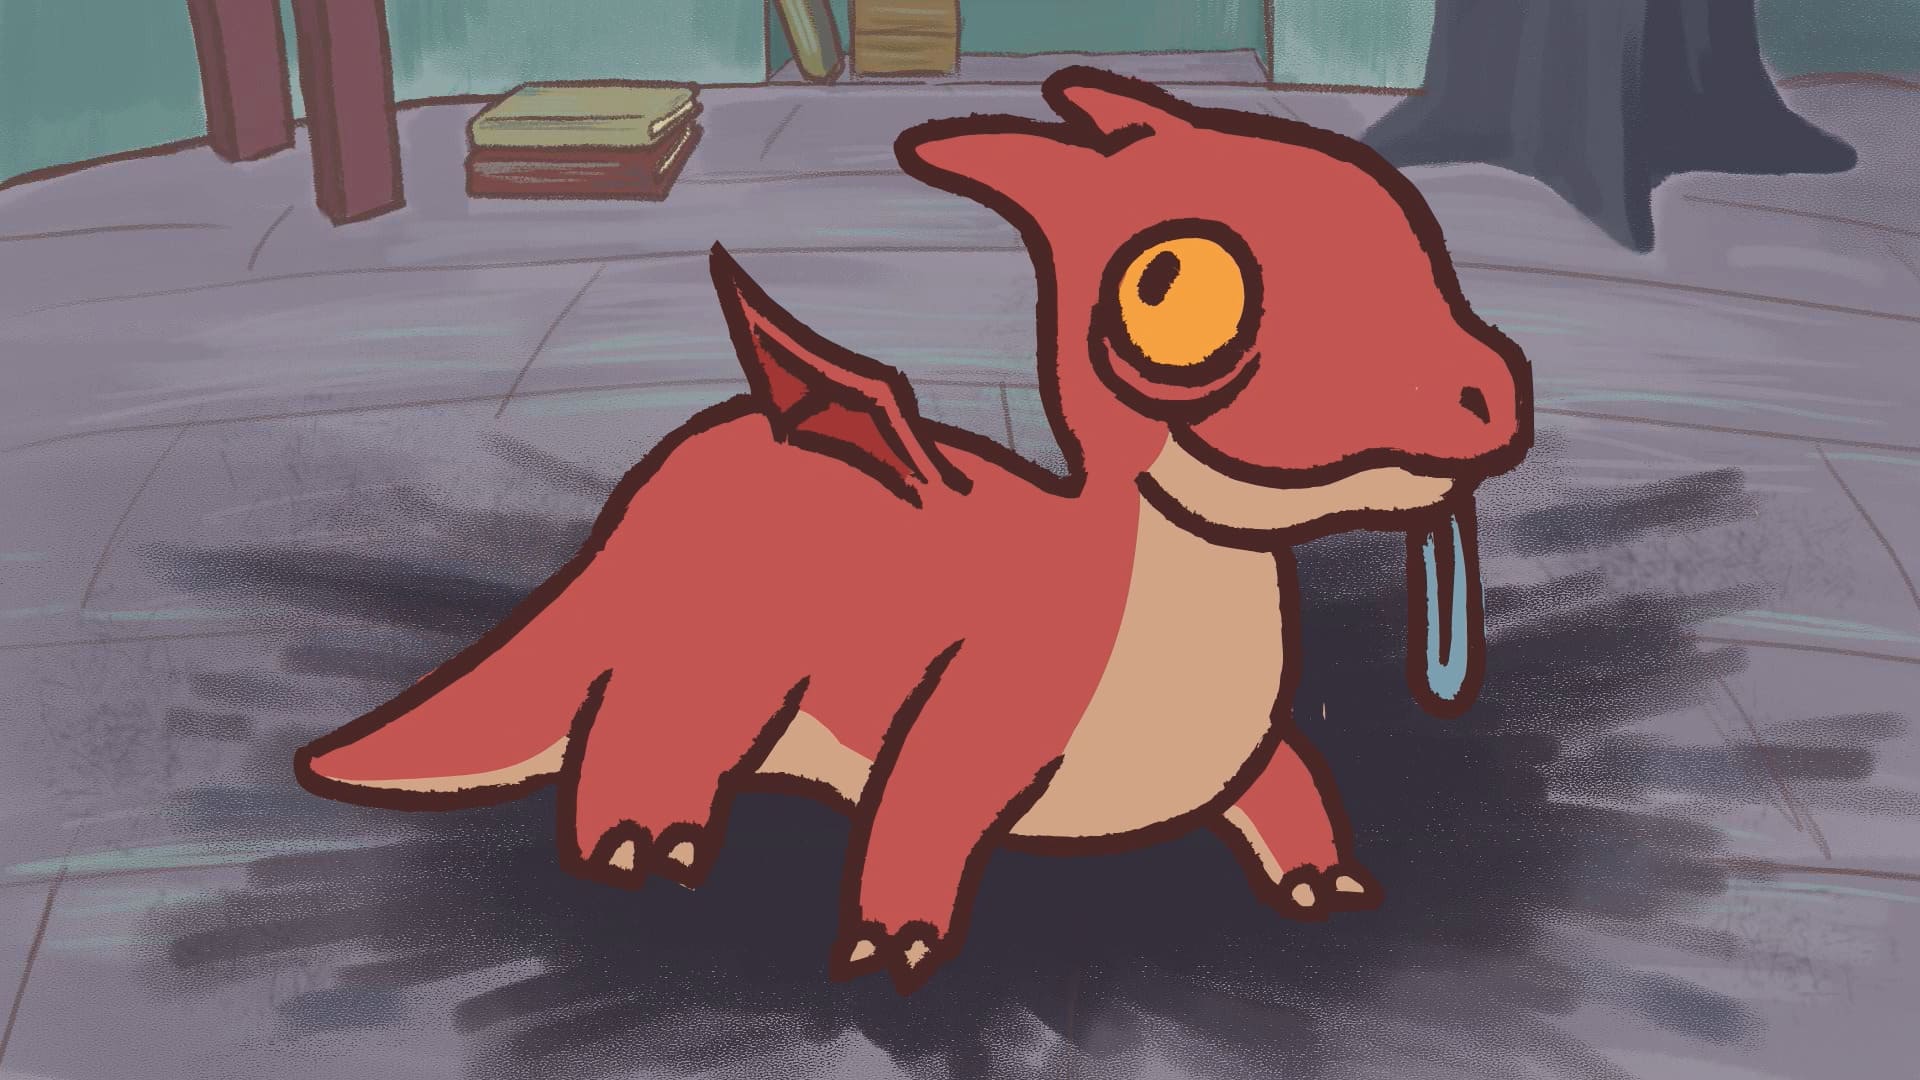 Se muestra un dragón bebe de color rojo pastel, tiene unos ojos grandes amarillos y unas pequeñas e inexpertas alas.